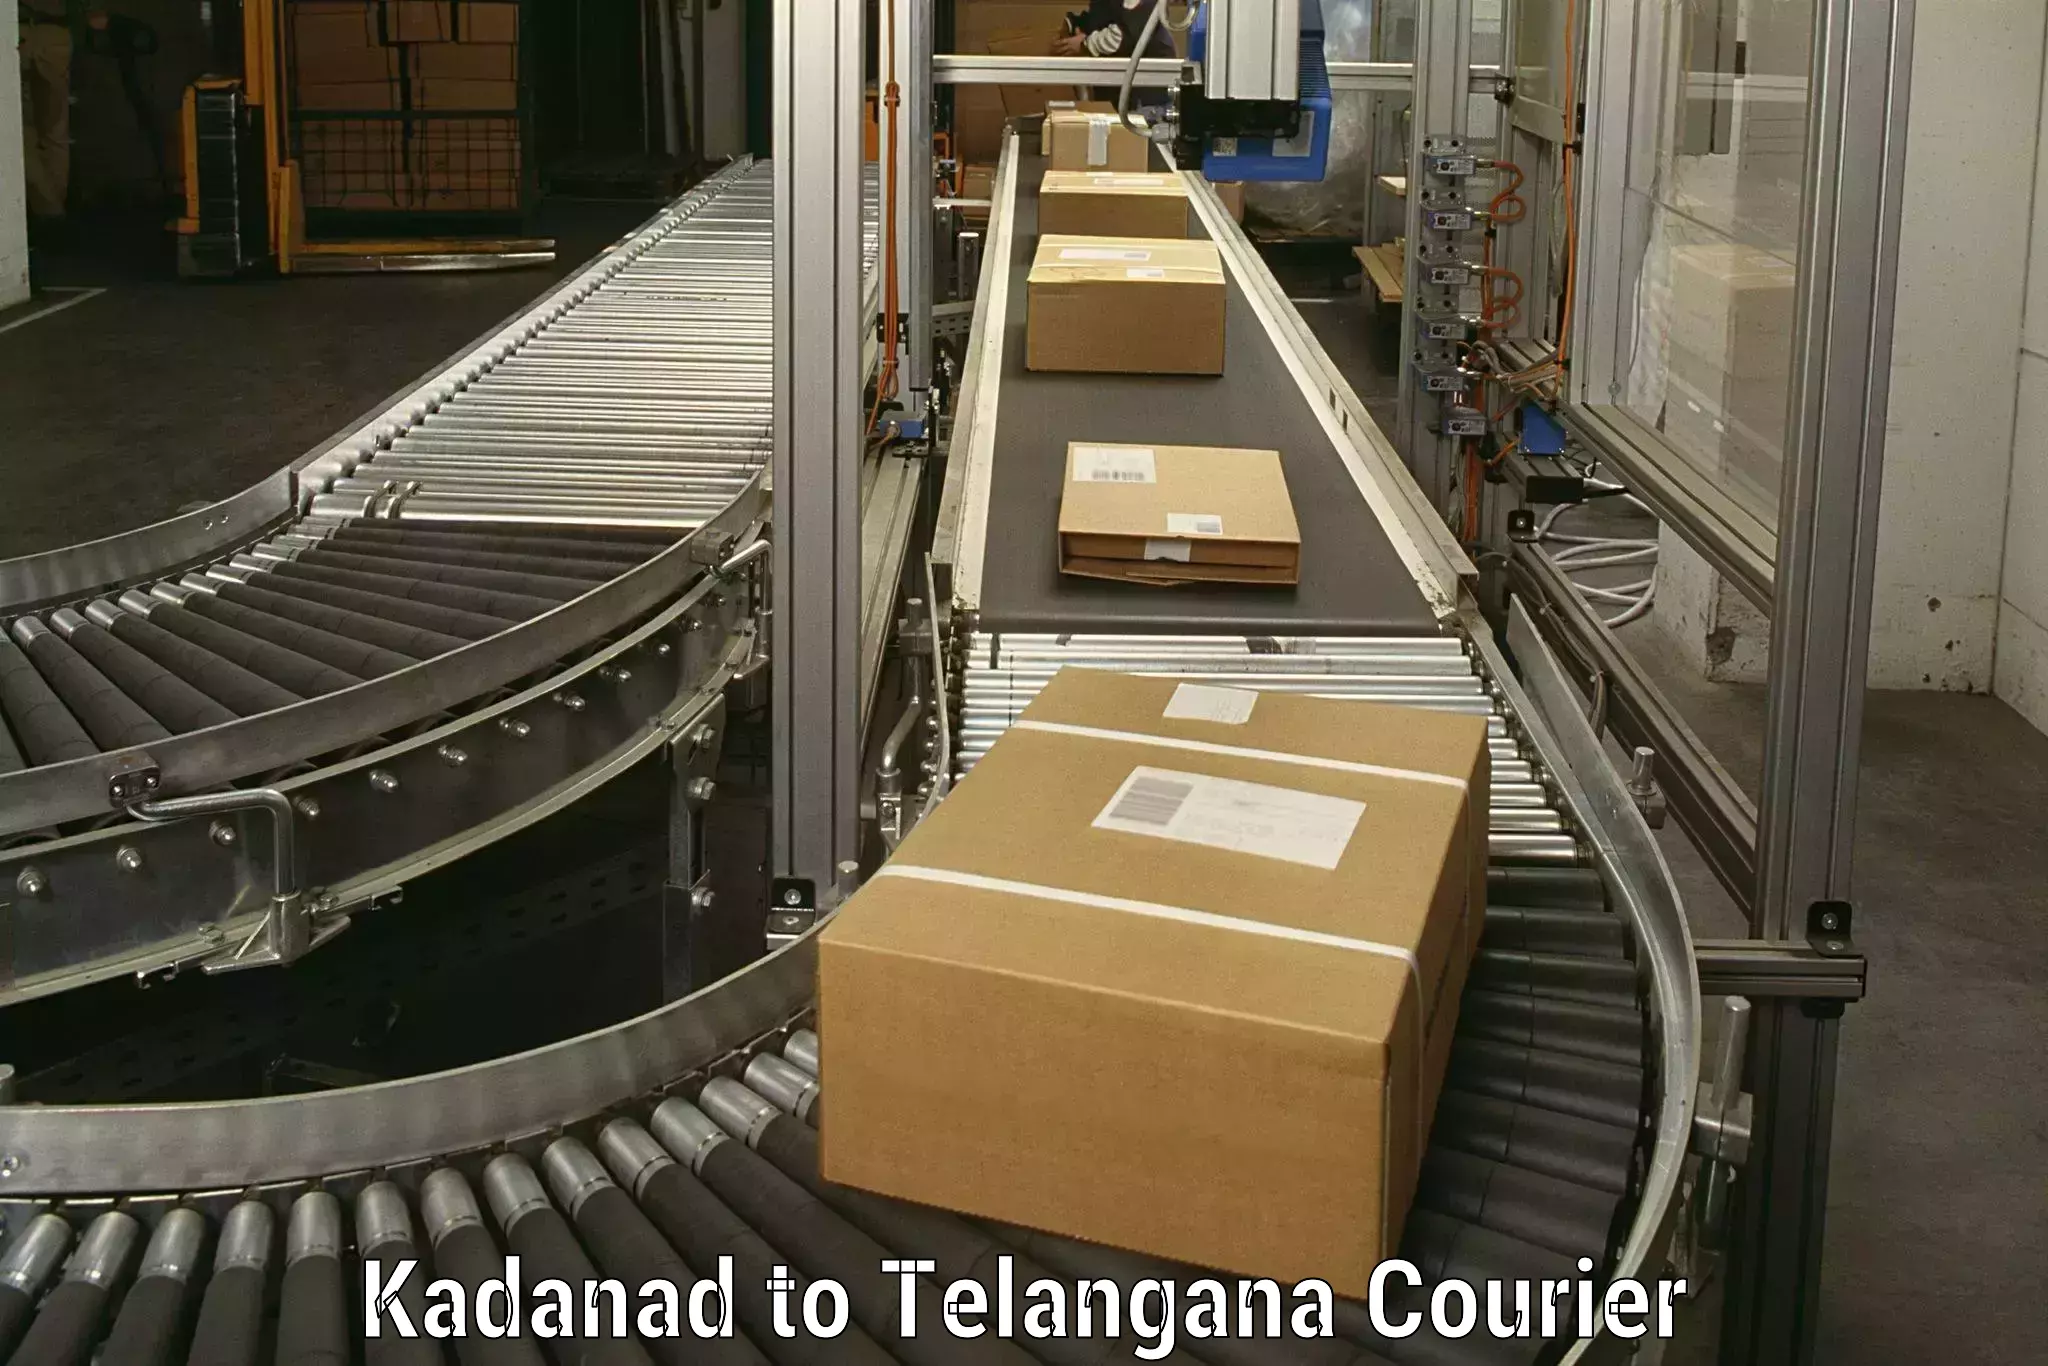 Customized household moving Kadanad to Telangana